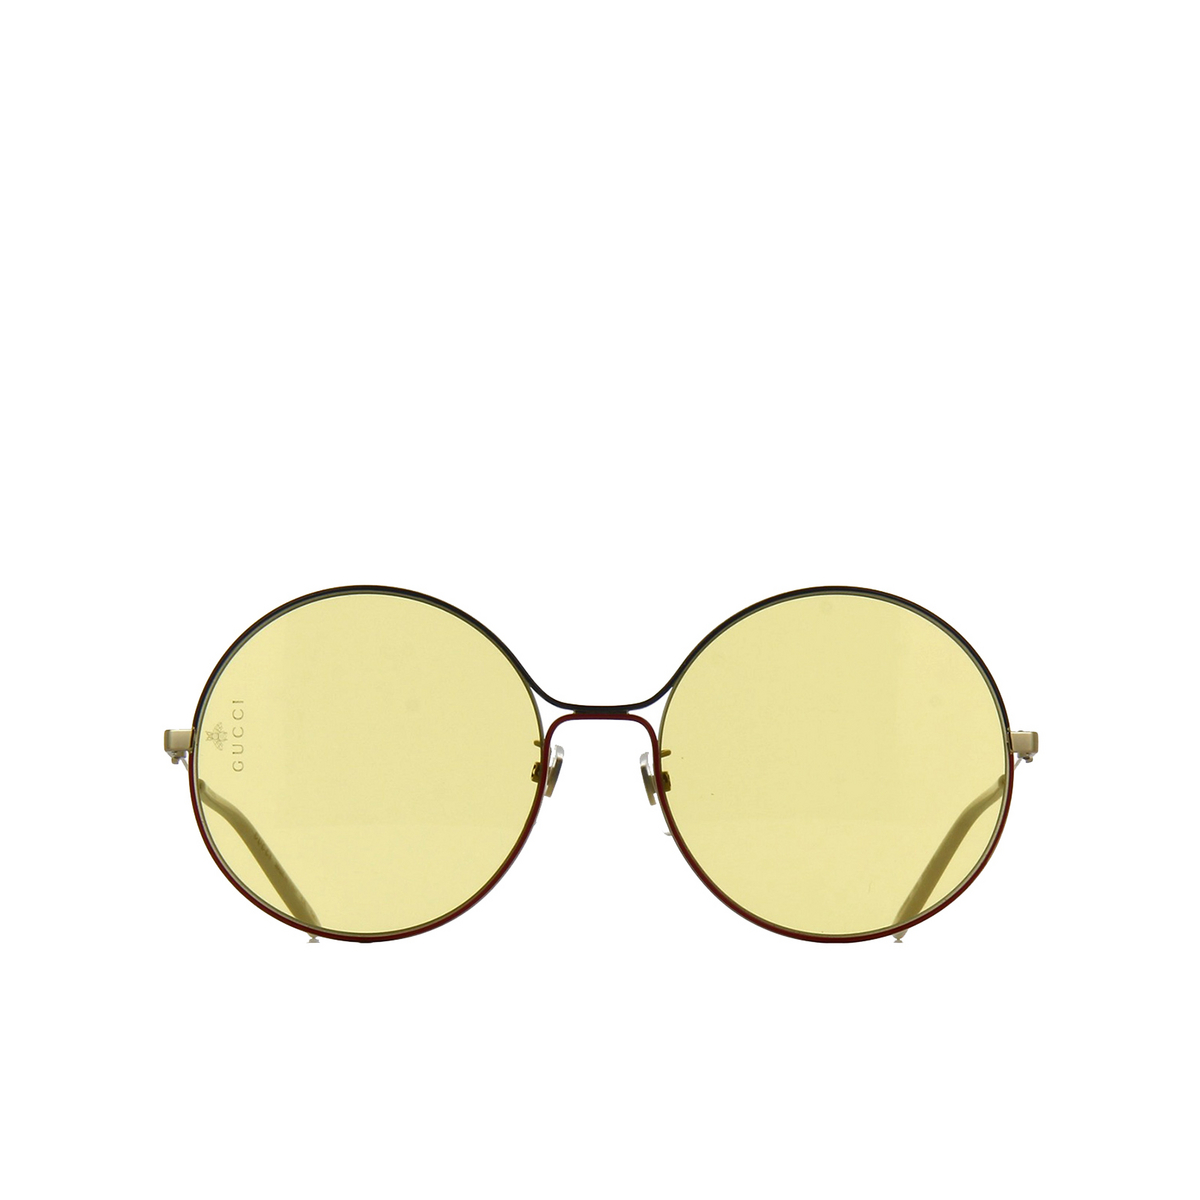 Gucci® Round Sunglasses: GG0395S color 005 Gold - 1/3